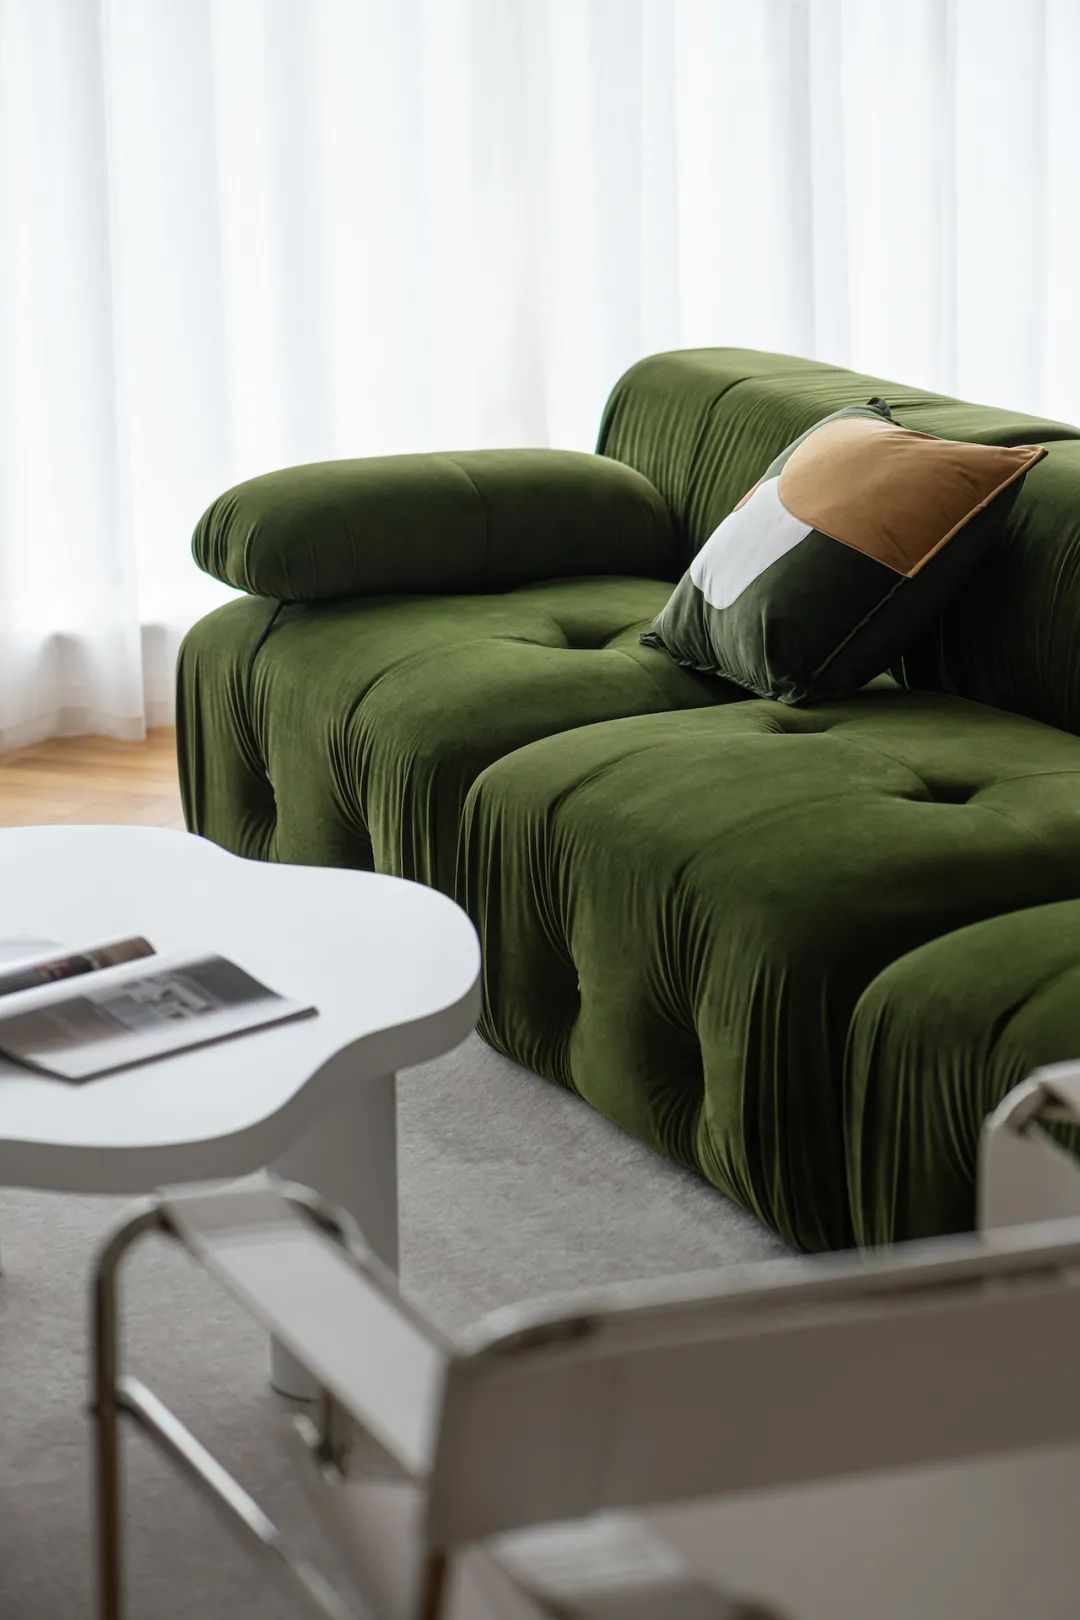 客厅采用的绿色的沙发,复古却充满着活力